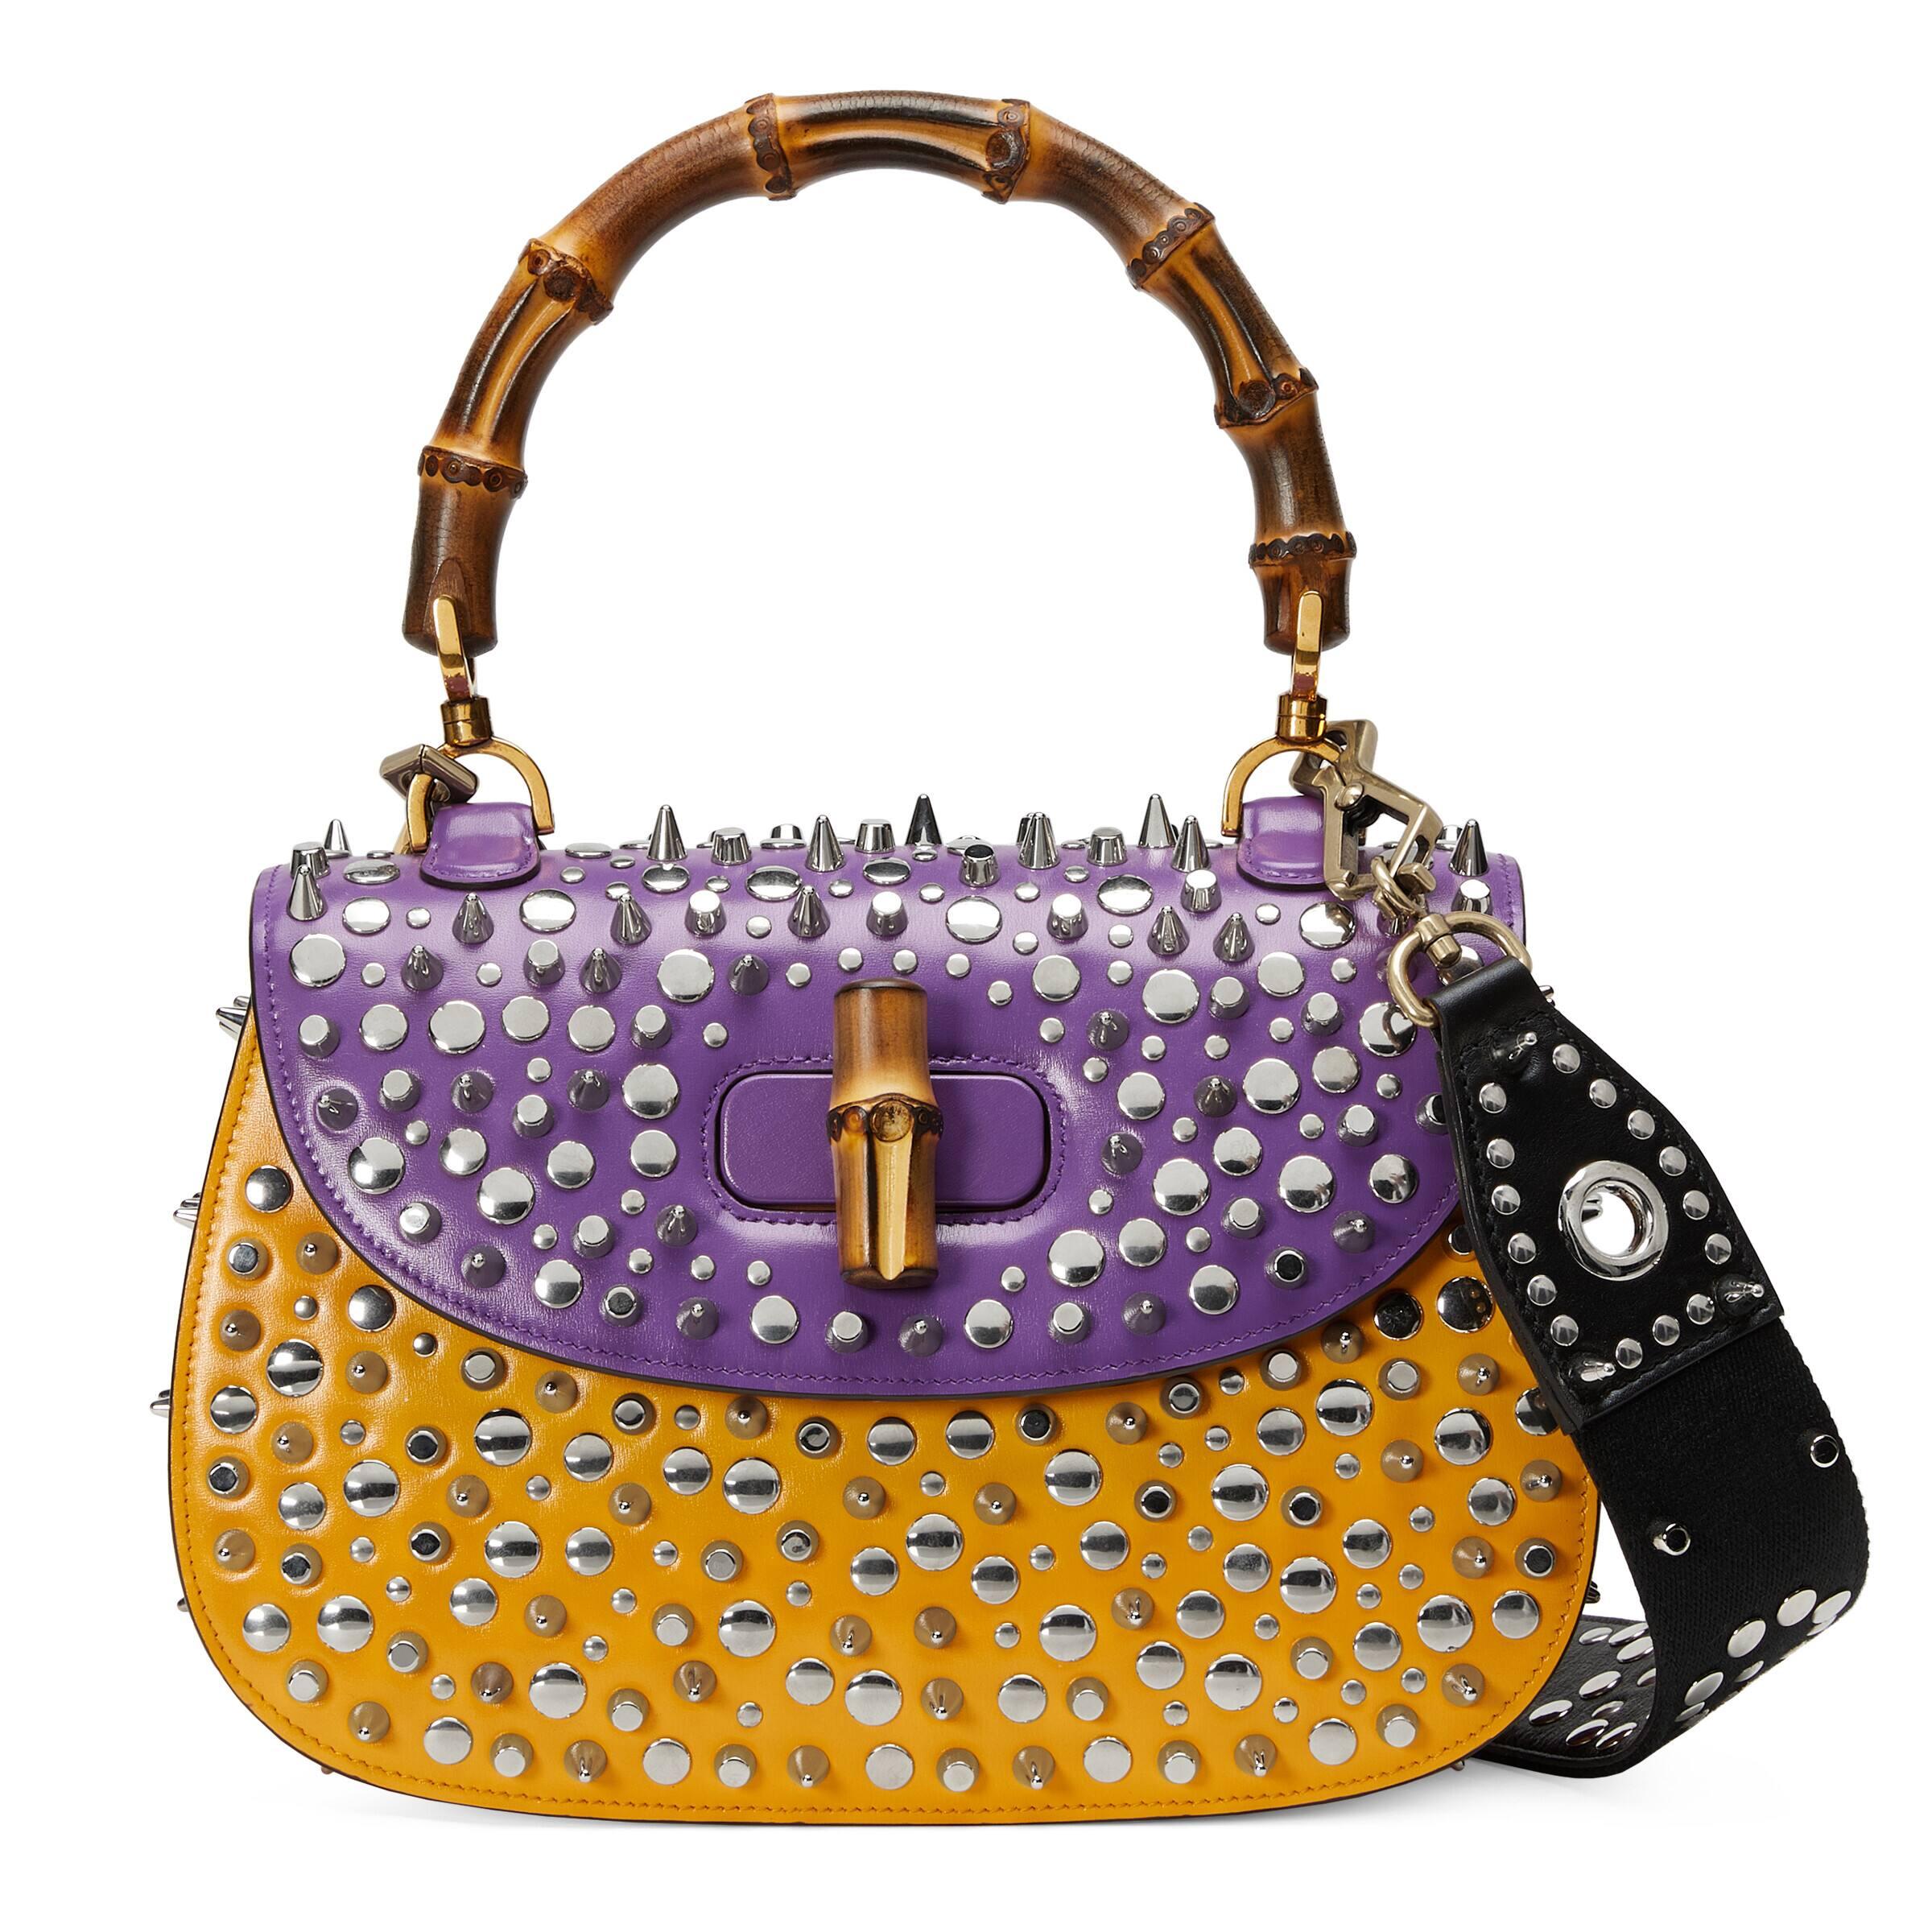 Gucci Bamboo 1947 mini top handle bag in purple leather